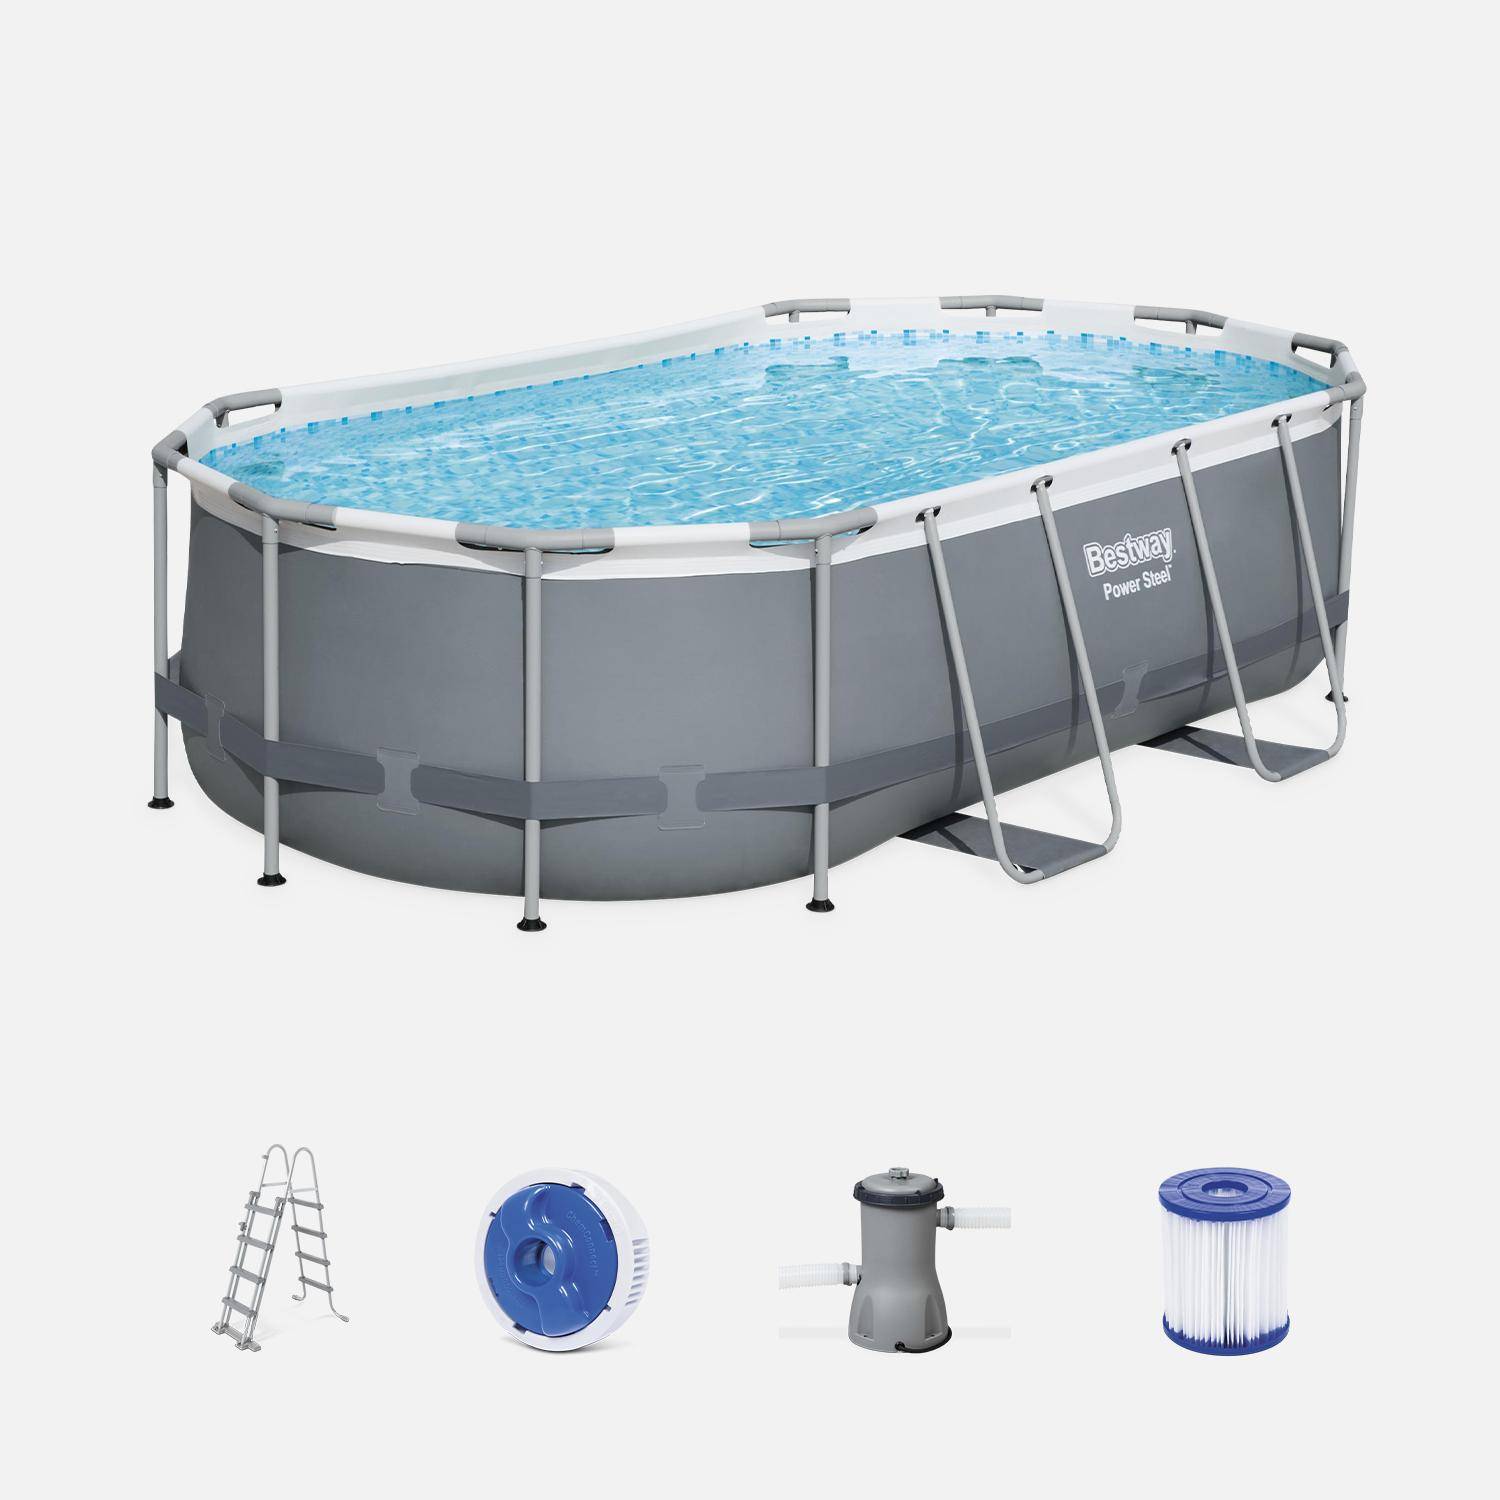 Kit piscine complet BESTWAY – Spinelle grise – piscine ovale tubulaire 4x2 m, pompe de filtration, échelle et kit de réparation inclus  Photo2